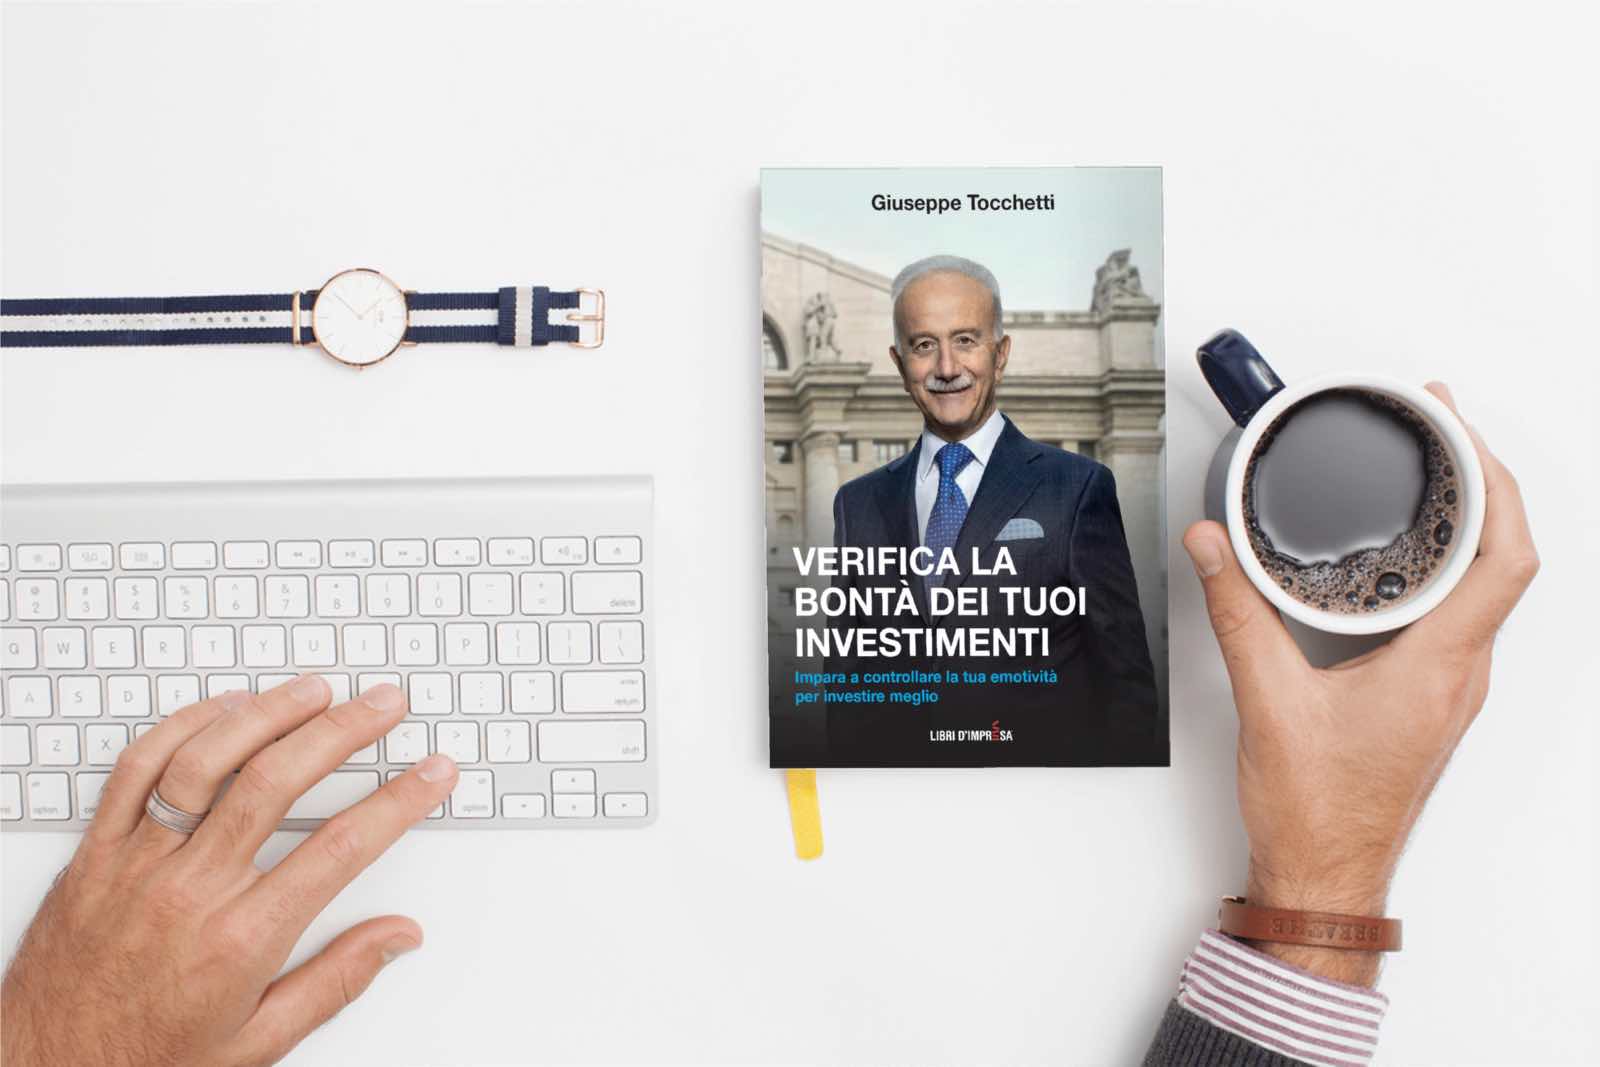 Verifica la bontà dei tuoi investimenti - Giuseppe Tocchetti - Libri d'Impresa